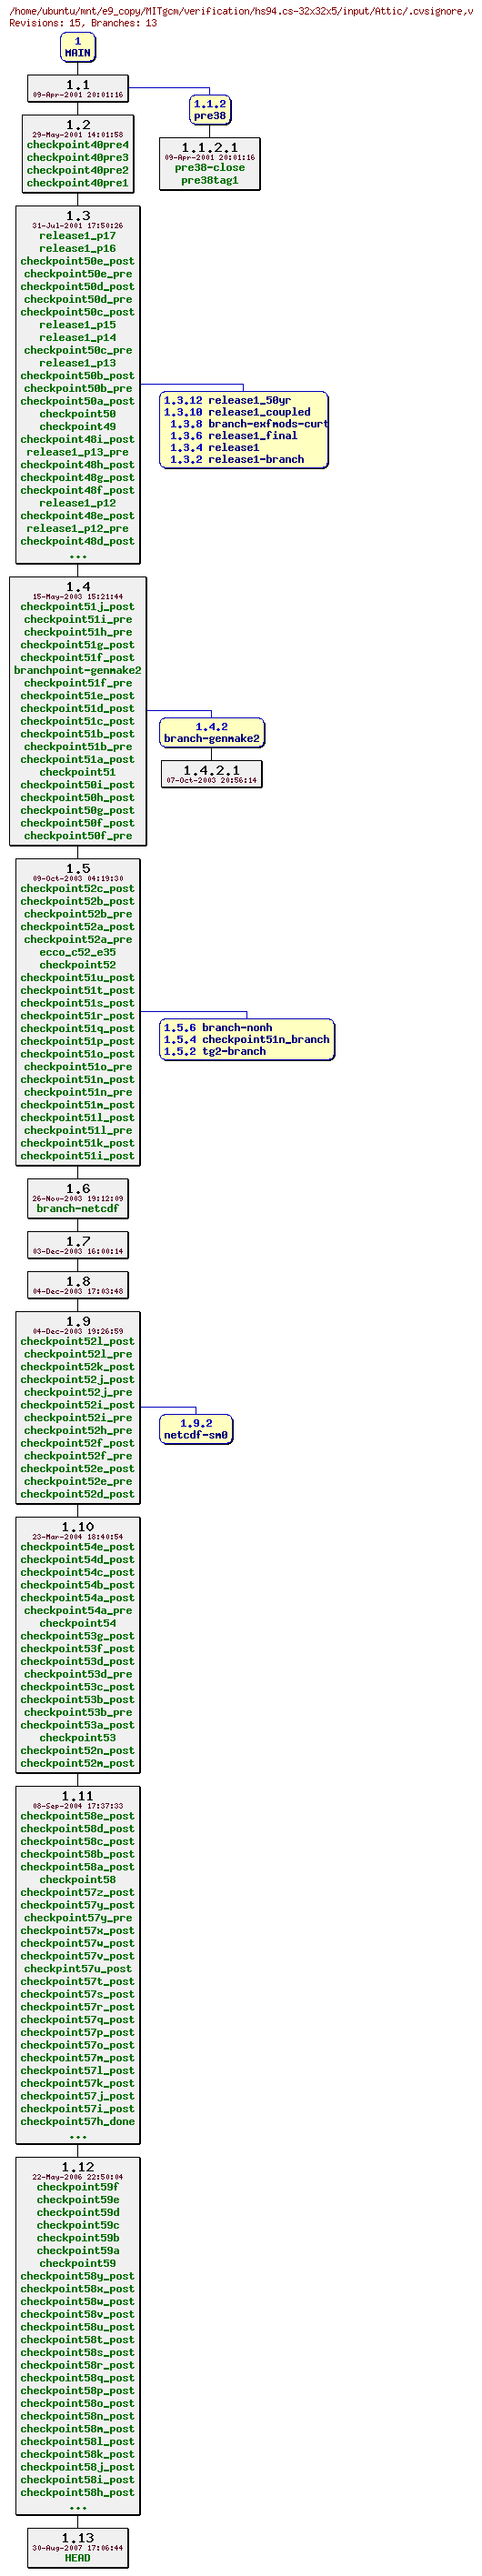 Revisions of MITgcm/verification/hs94.cs-32x32x5/input/.cvsignore